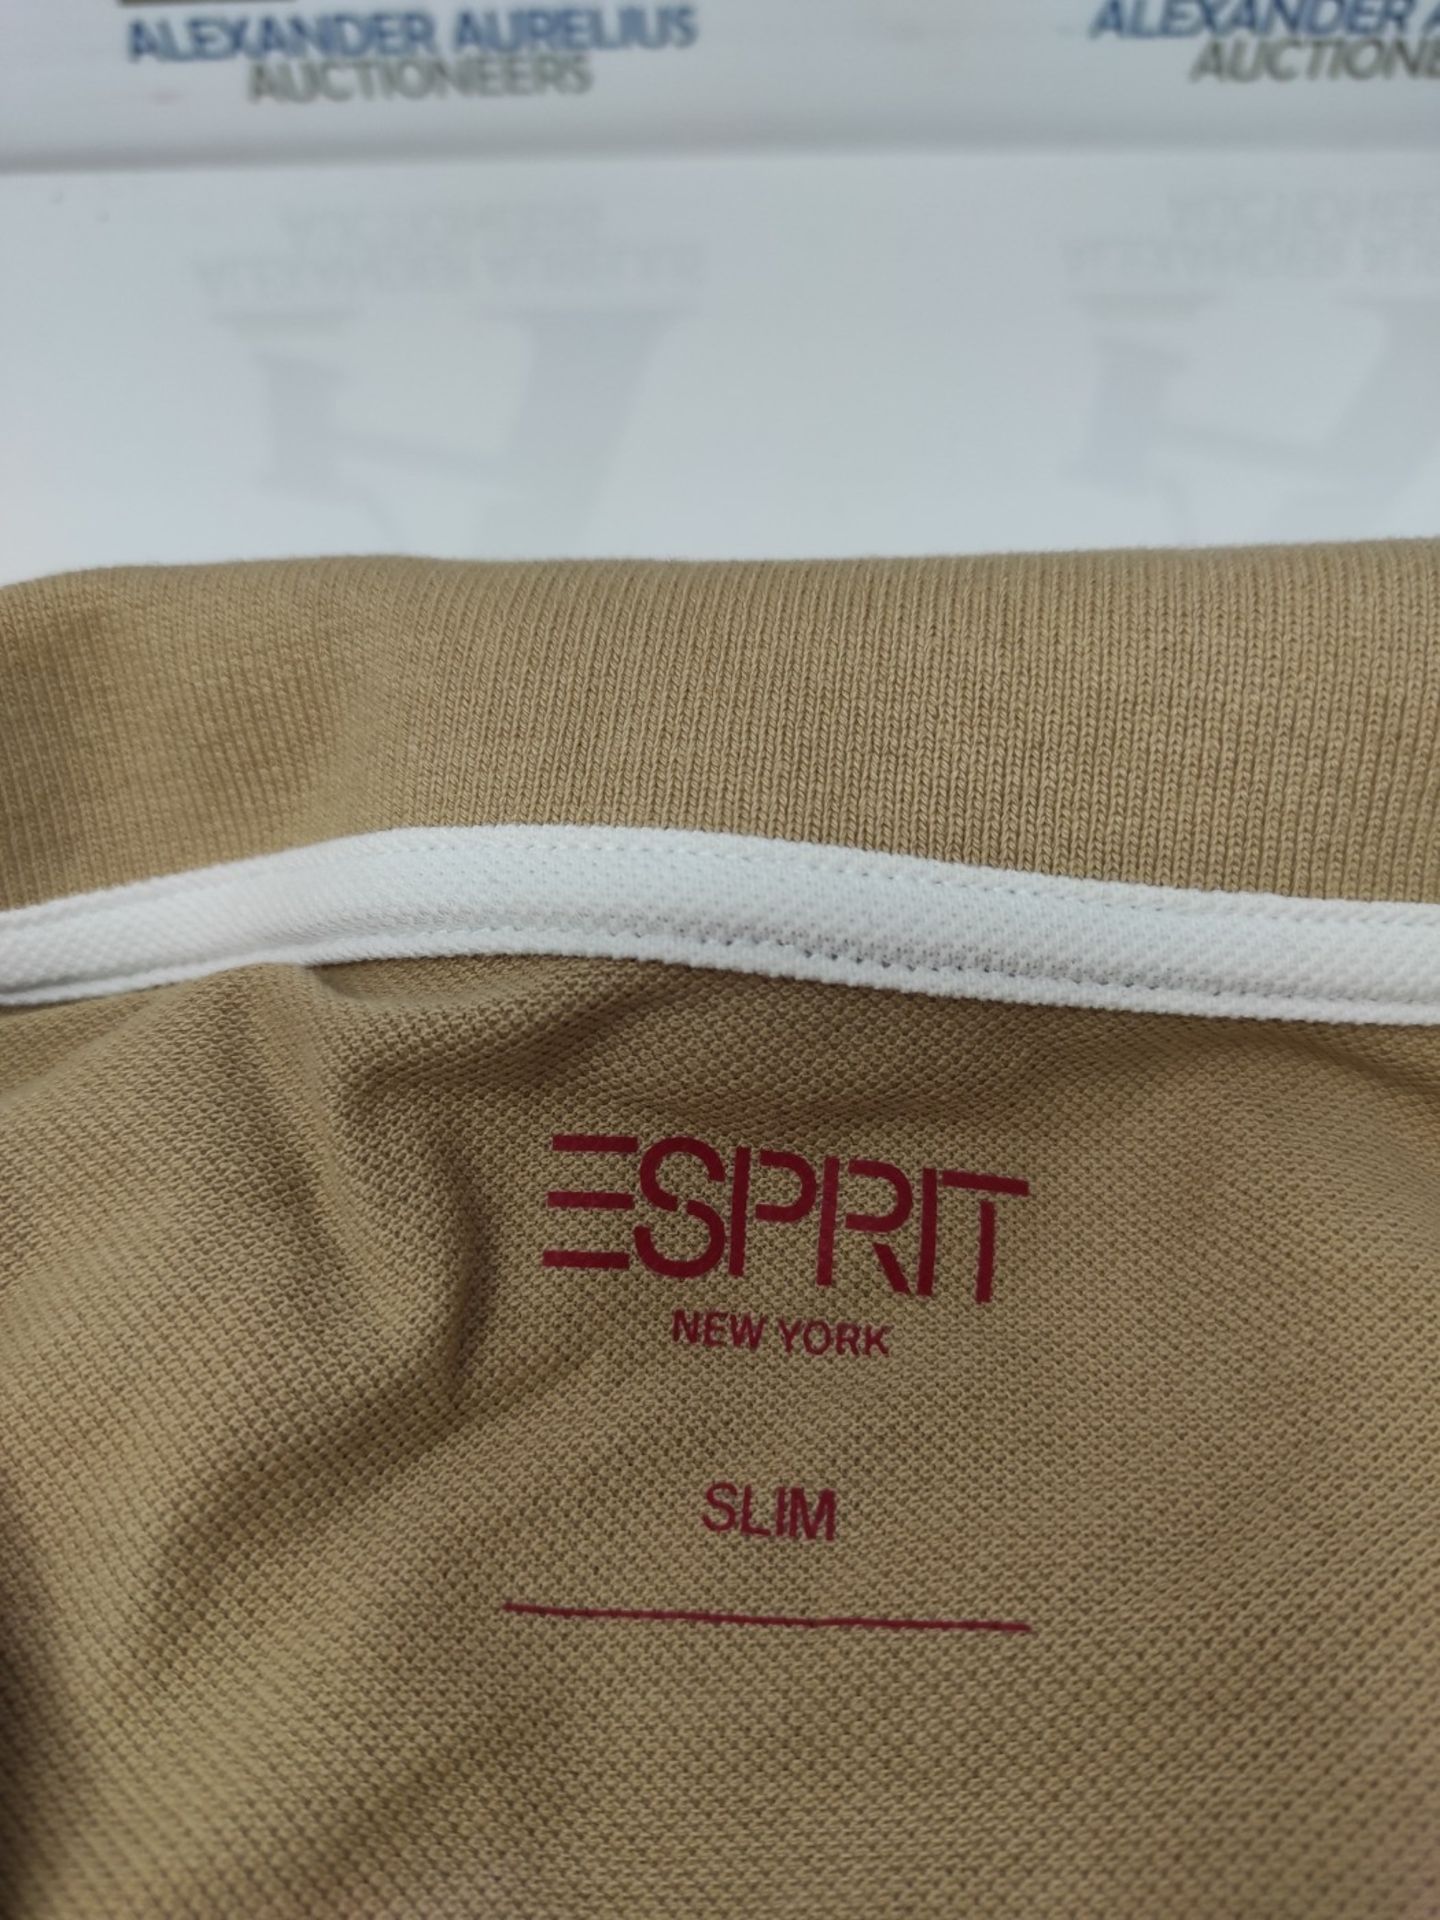 ESPRIT Men's Polo Shirt, BEIGE, XXL - Image 2 of 2